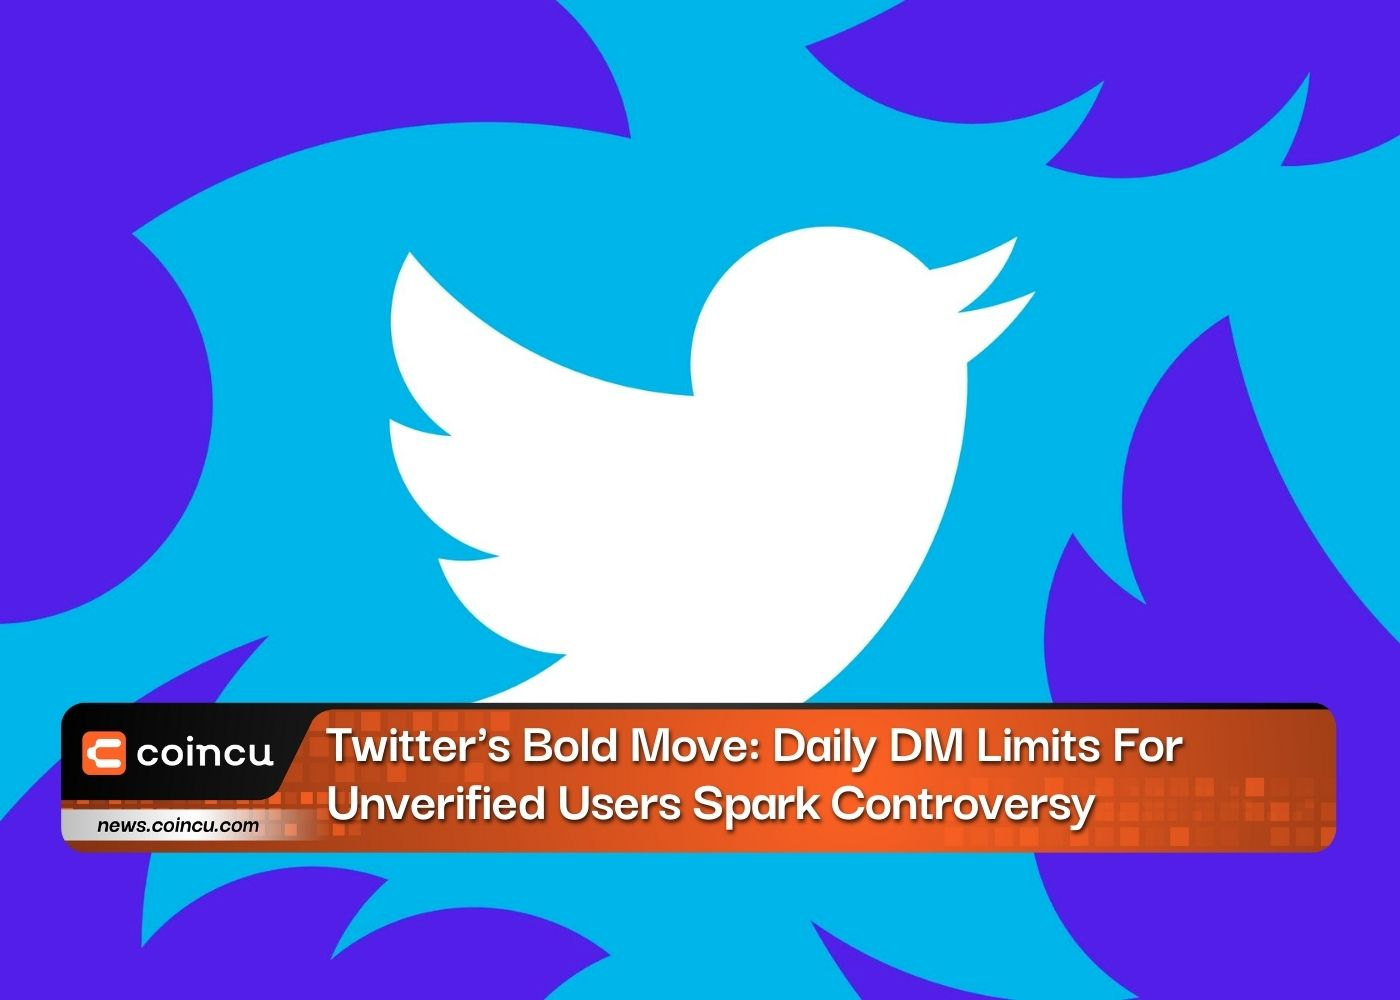 Le geste audacieux de Twitter : les limites quotidiennes de DM pour les utilisateurs non vérifiés suscitent la controverse